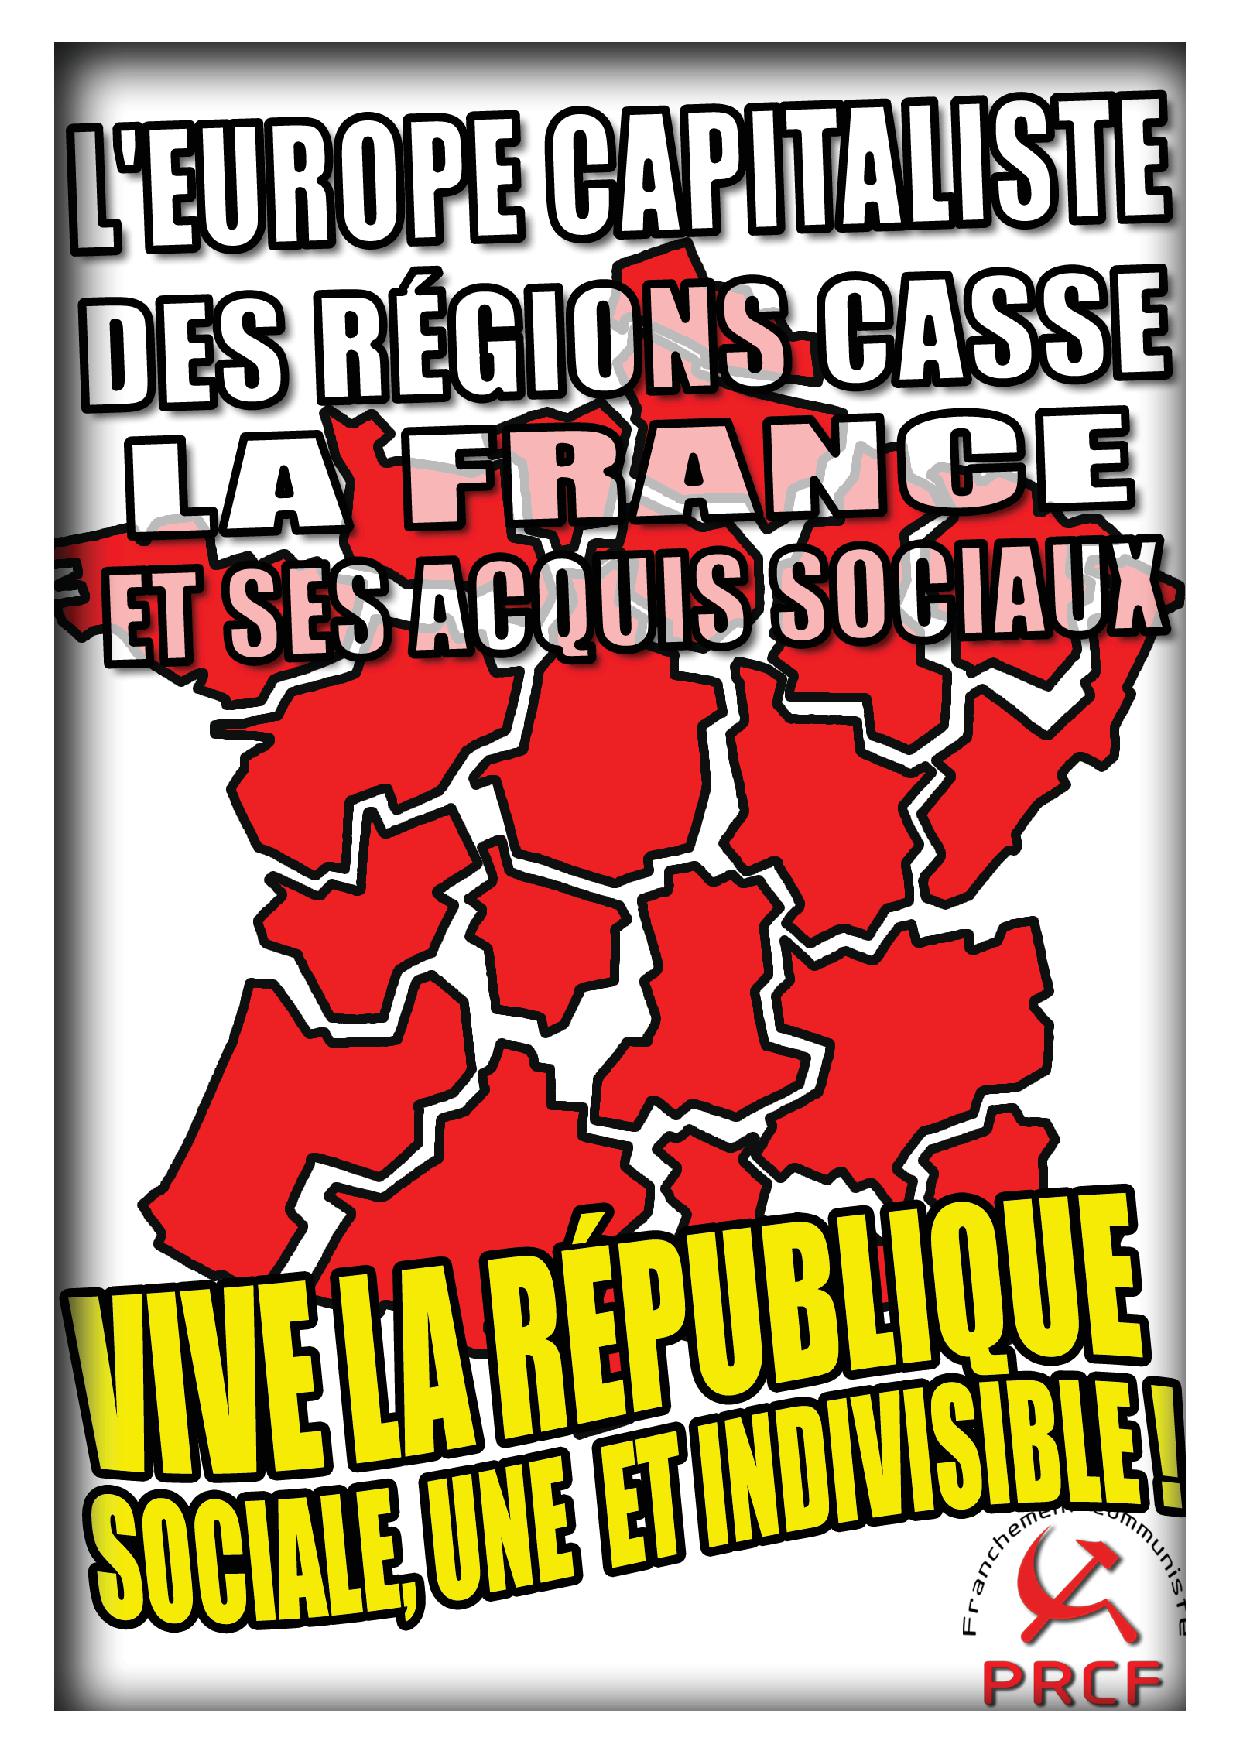 Illégitimes et anti-démocratiquement, des élus de la région réclament l’autonomie de la Bretagne.